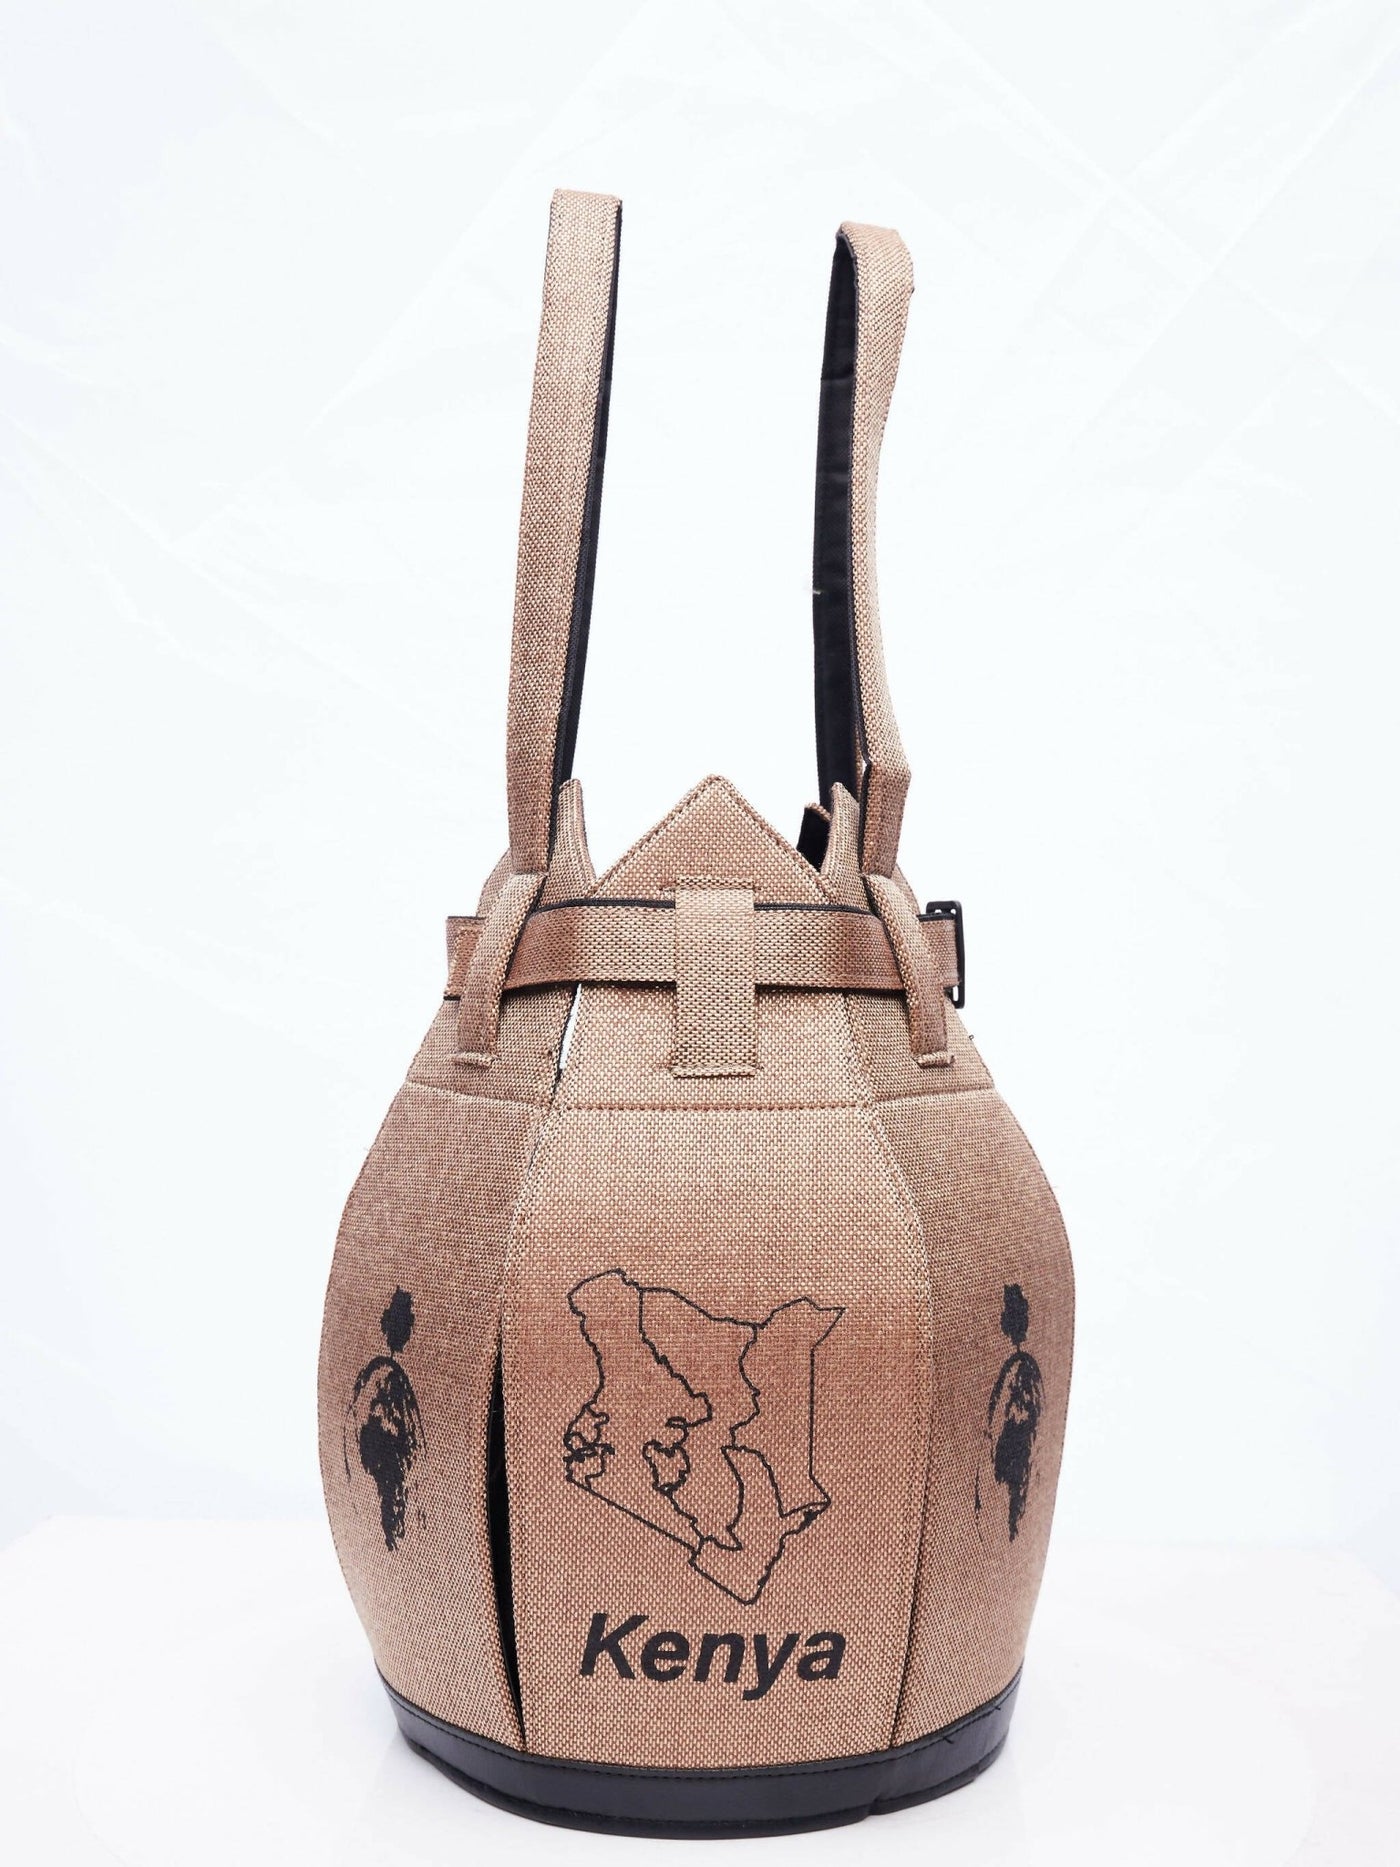 Kuldra Pineapple Spike Handbag Kenya - Ash - Shopzetu